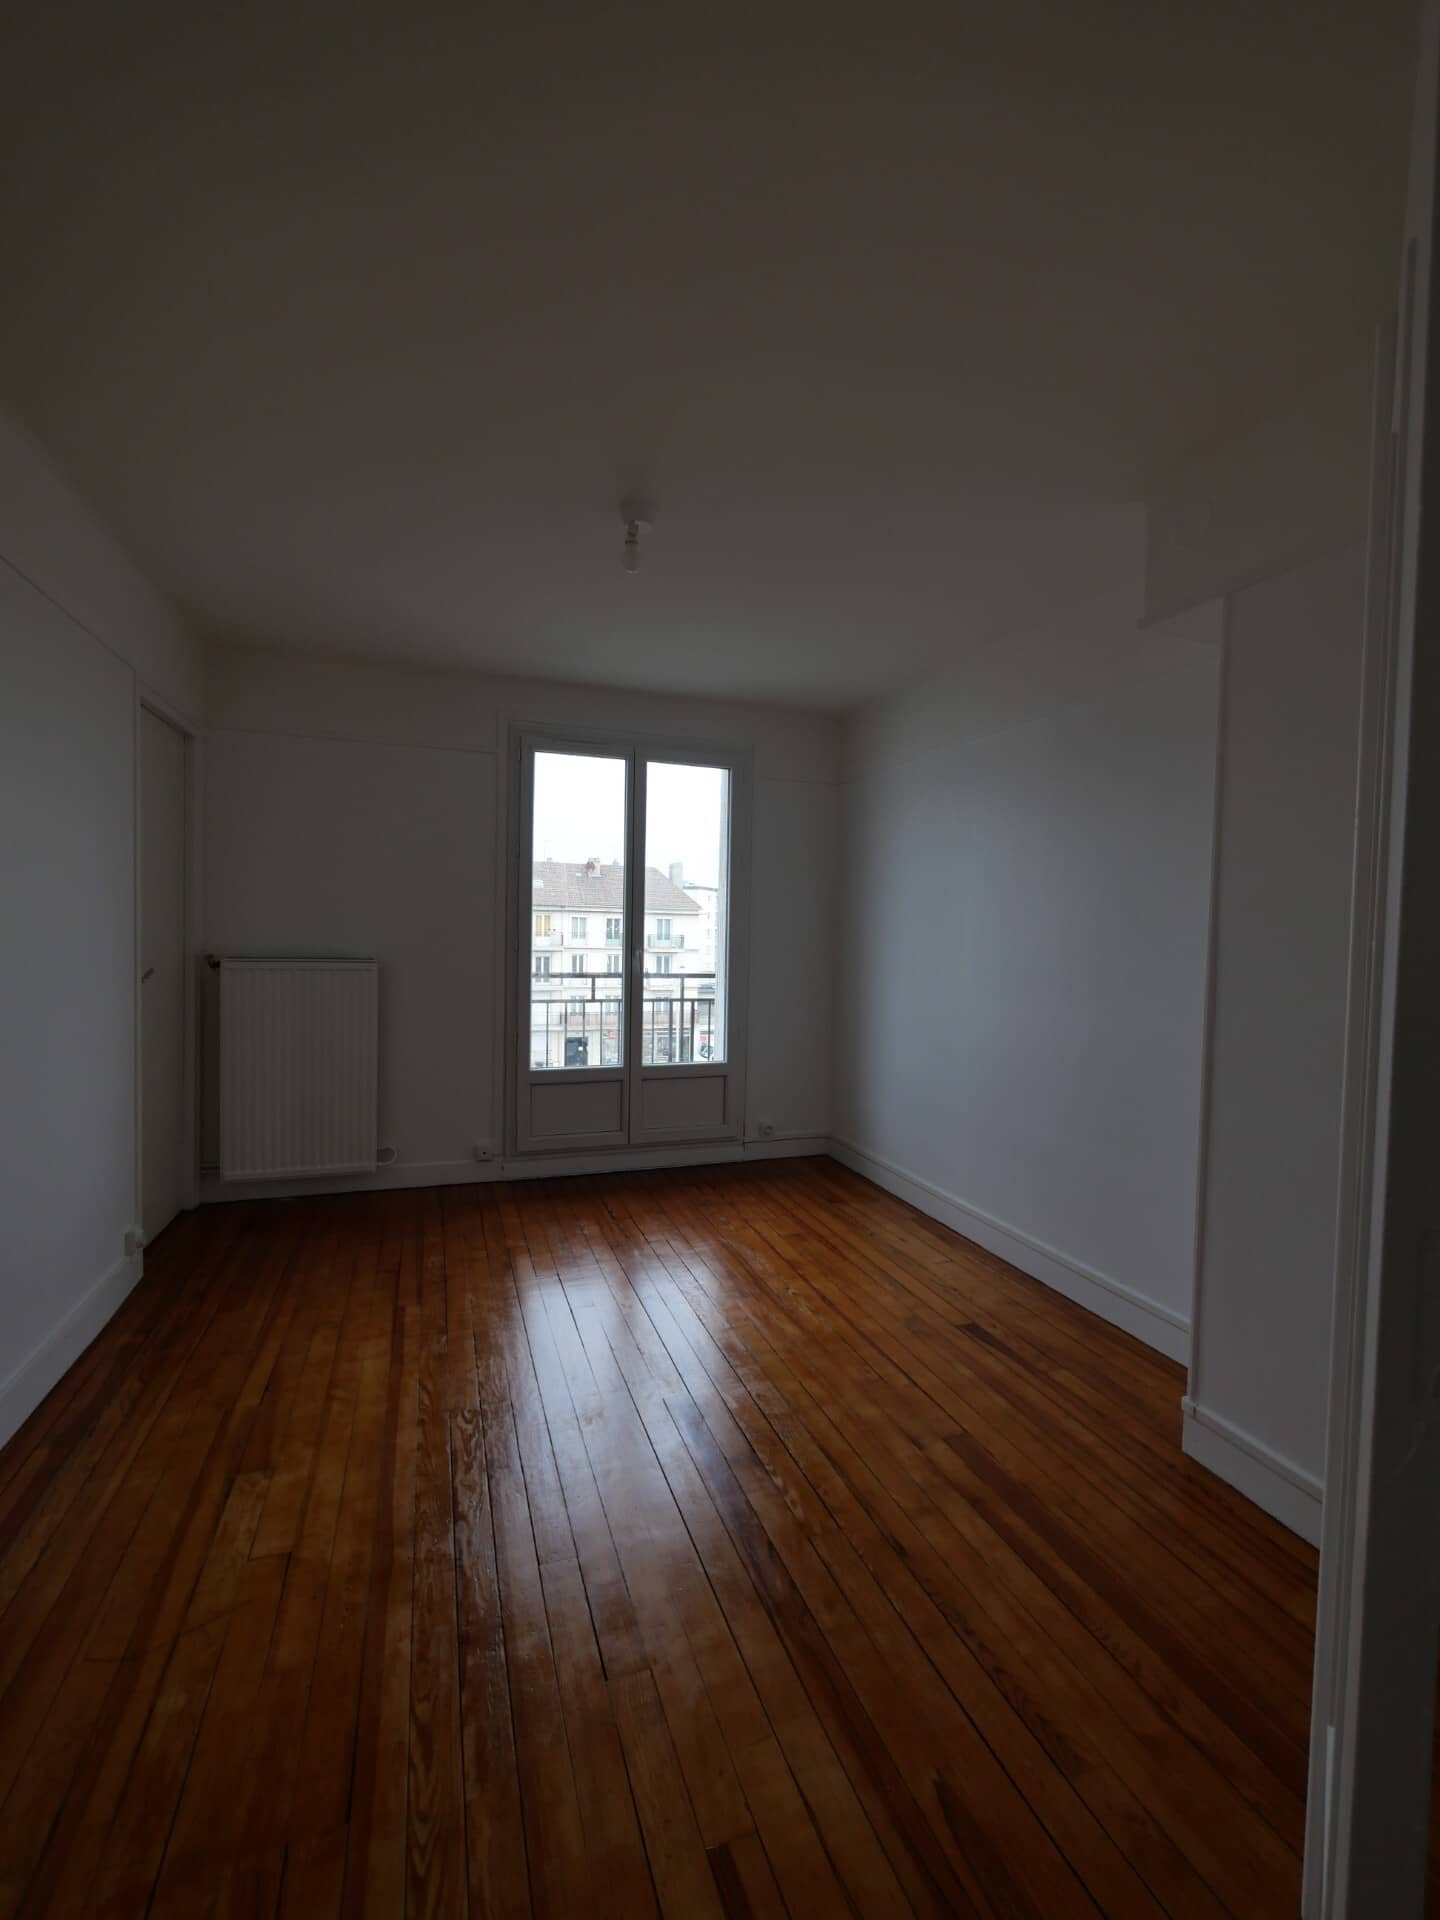 Annonce immobilière en location Appartement type F2 Le Havre 2077